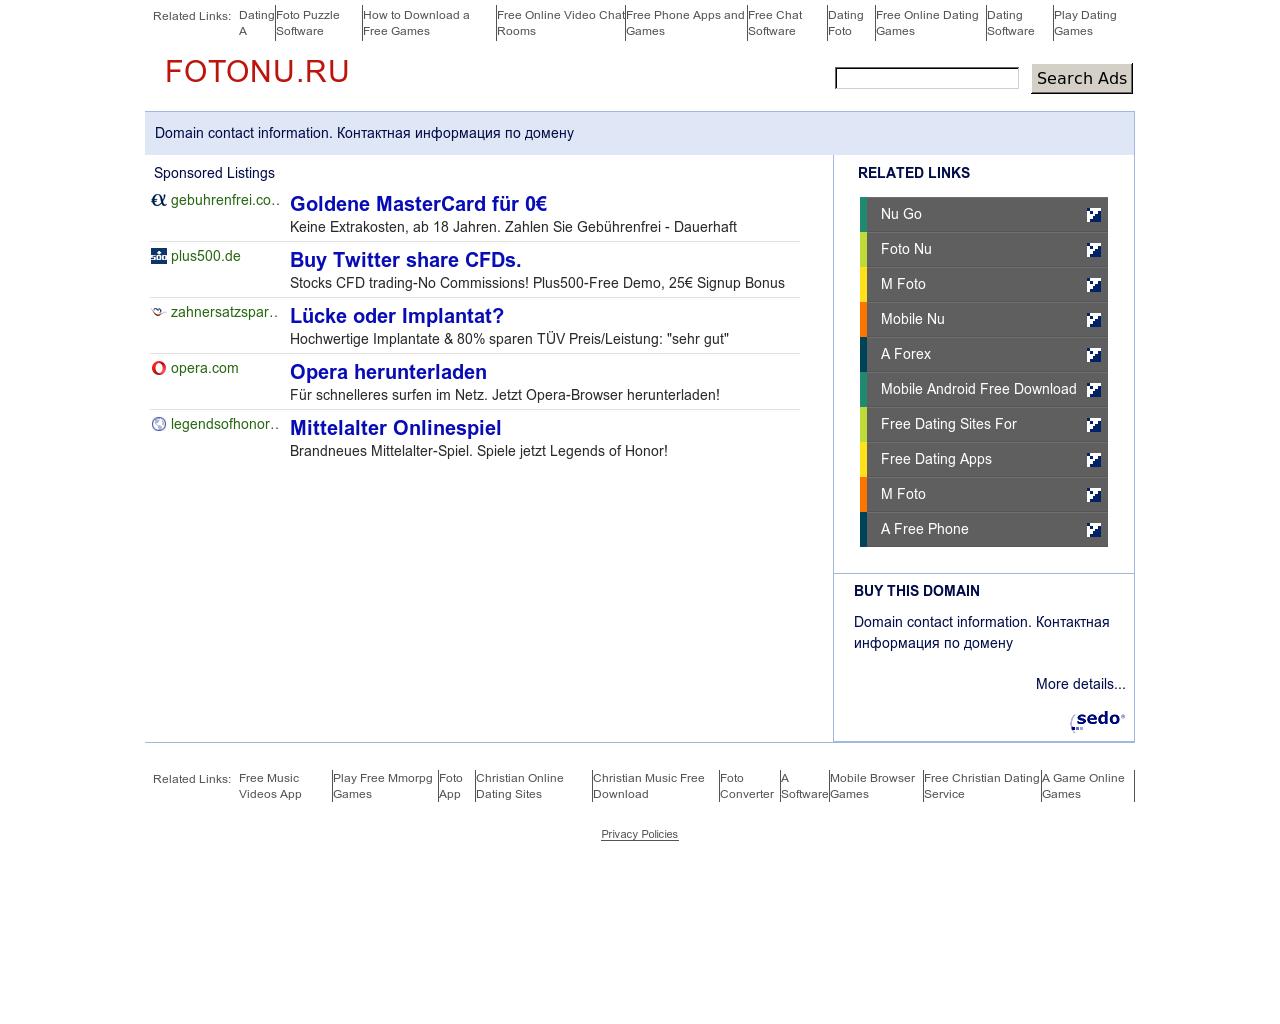 Изображение сайта fotonu.ru в разрешении 1280x1024